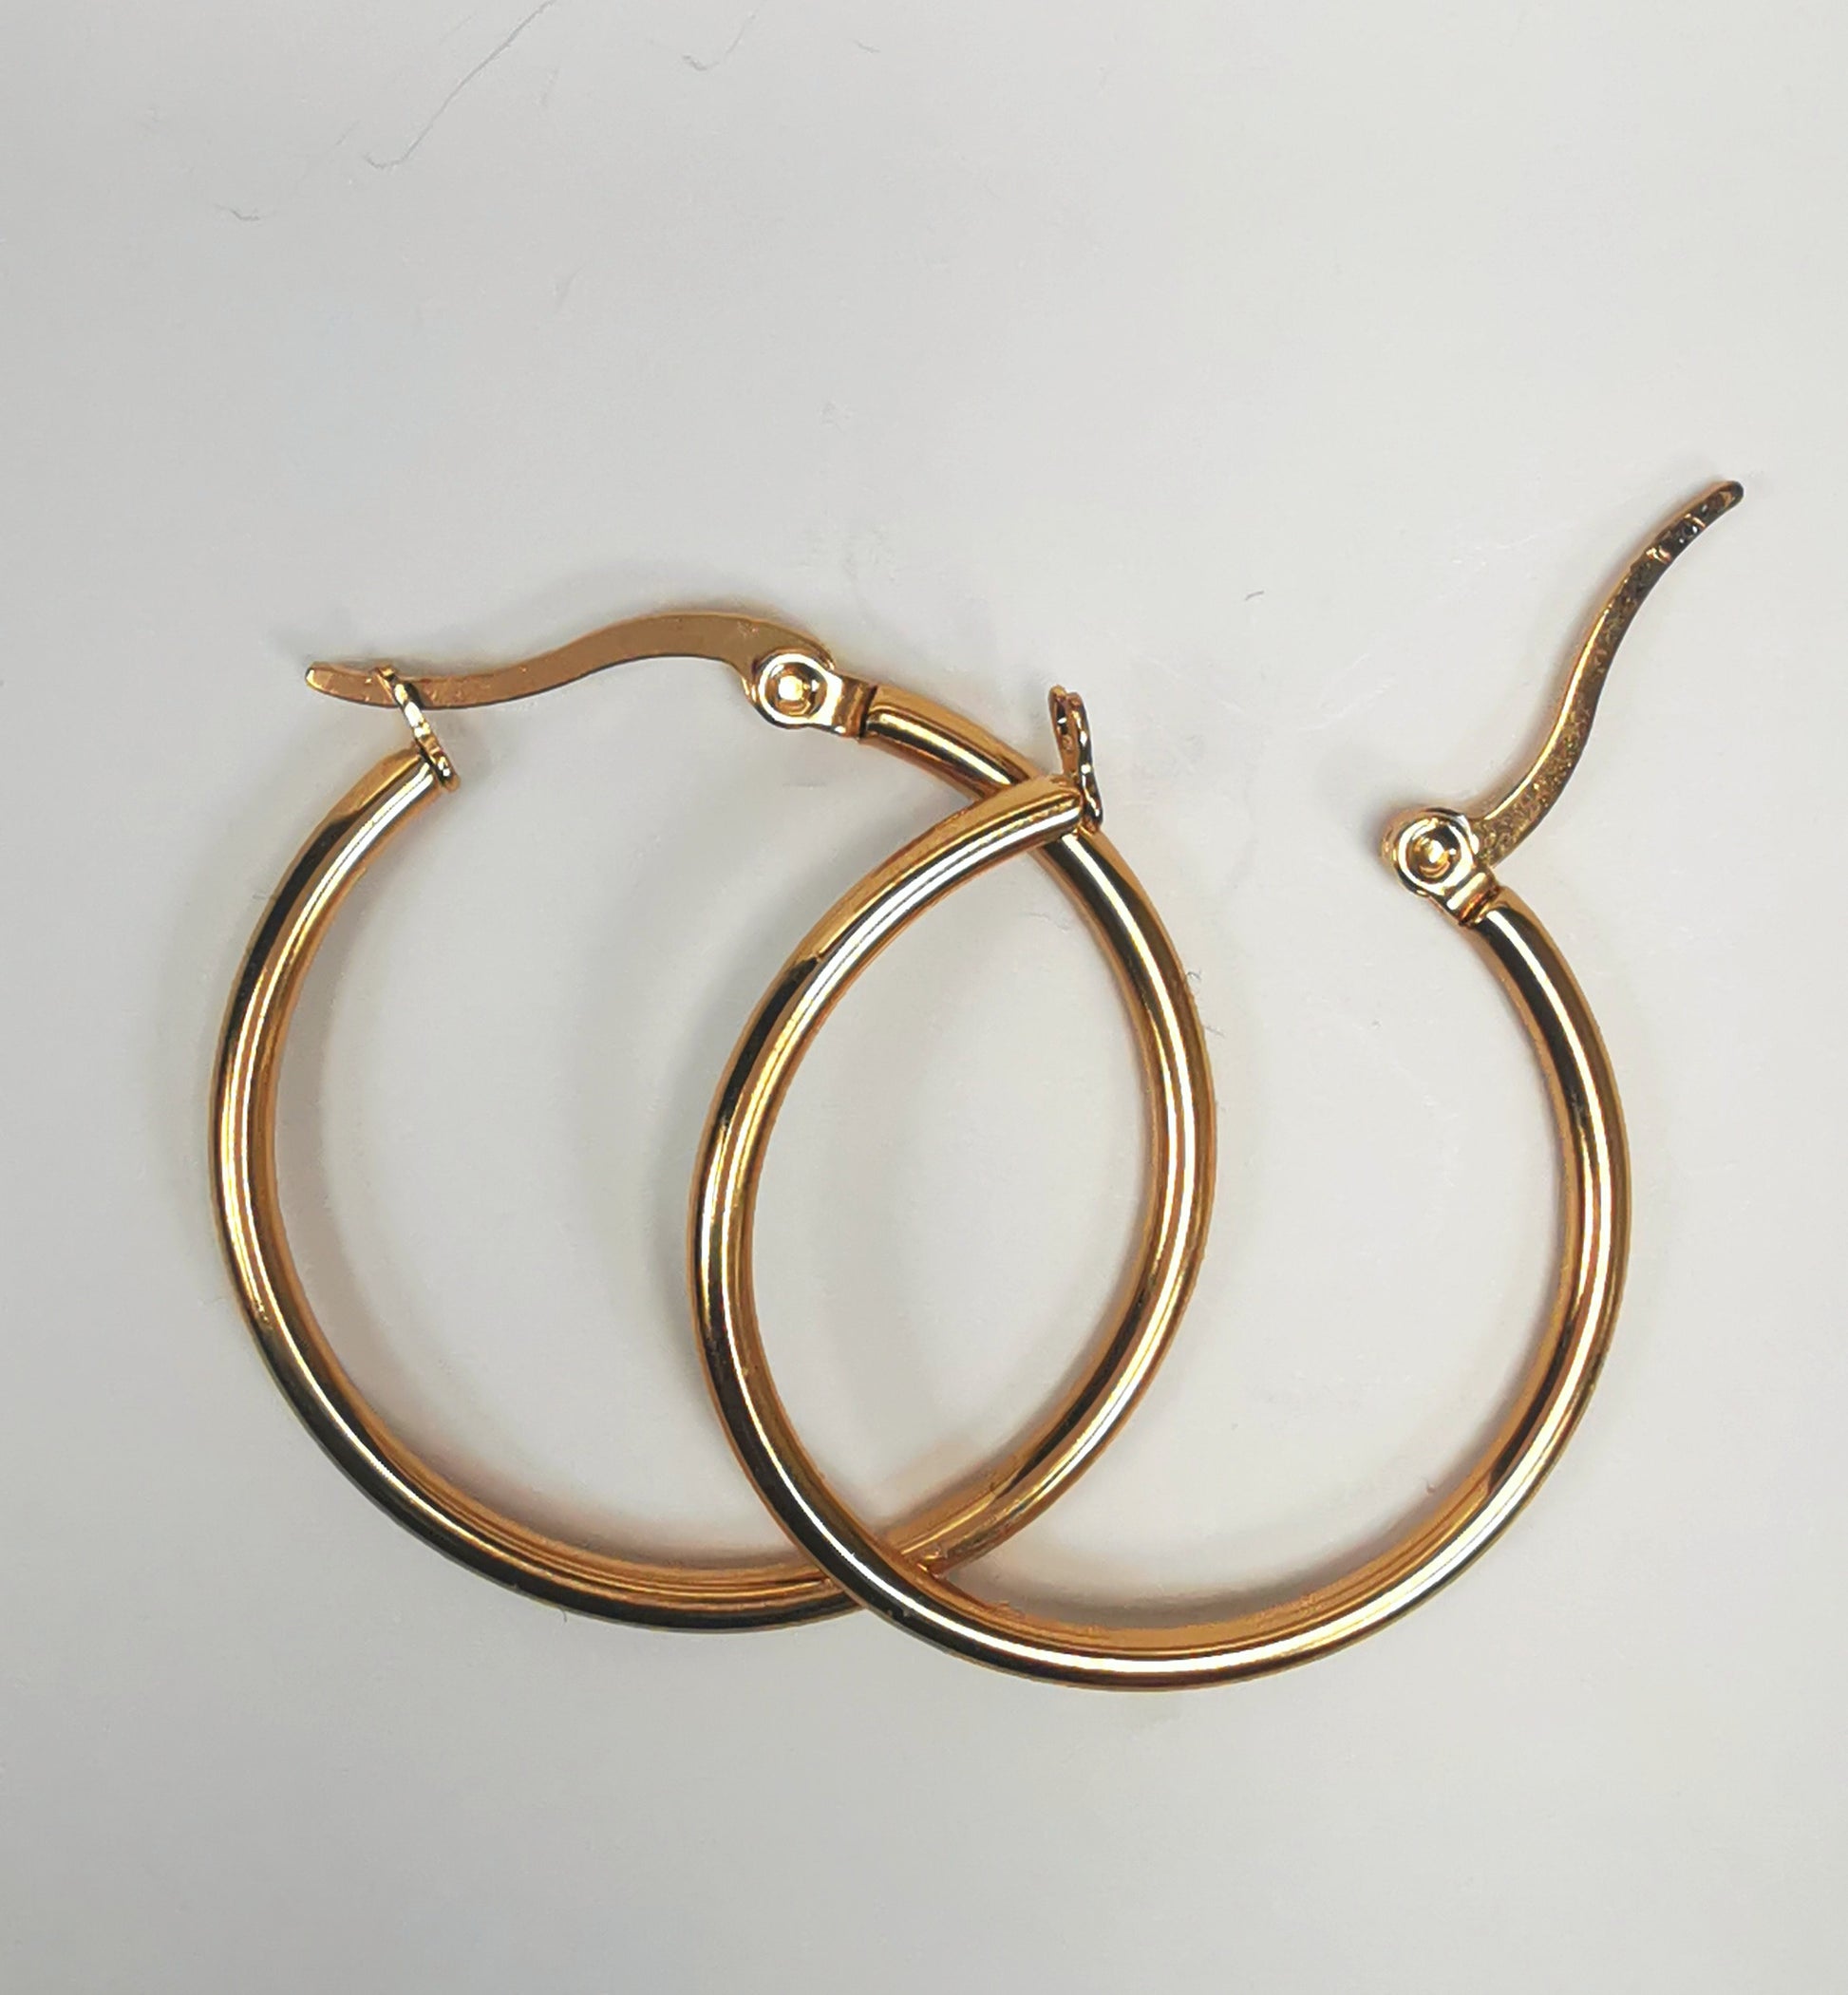 Boucles d'oreilles créoles inox plaqué or, diamètre 30mm, fil de 2mm. Présentées posées sur fond blanc, l'une sur l'autre, celle de droite fermoir ouvert. Vue de dessus.